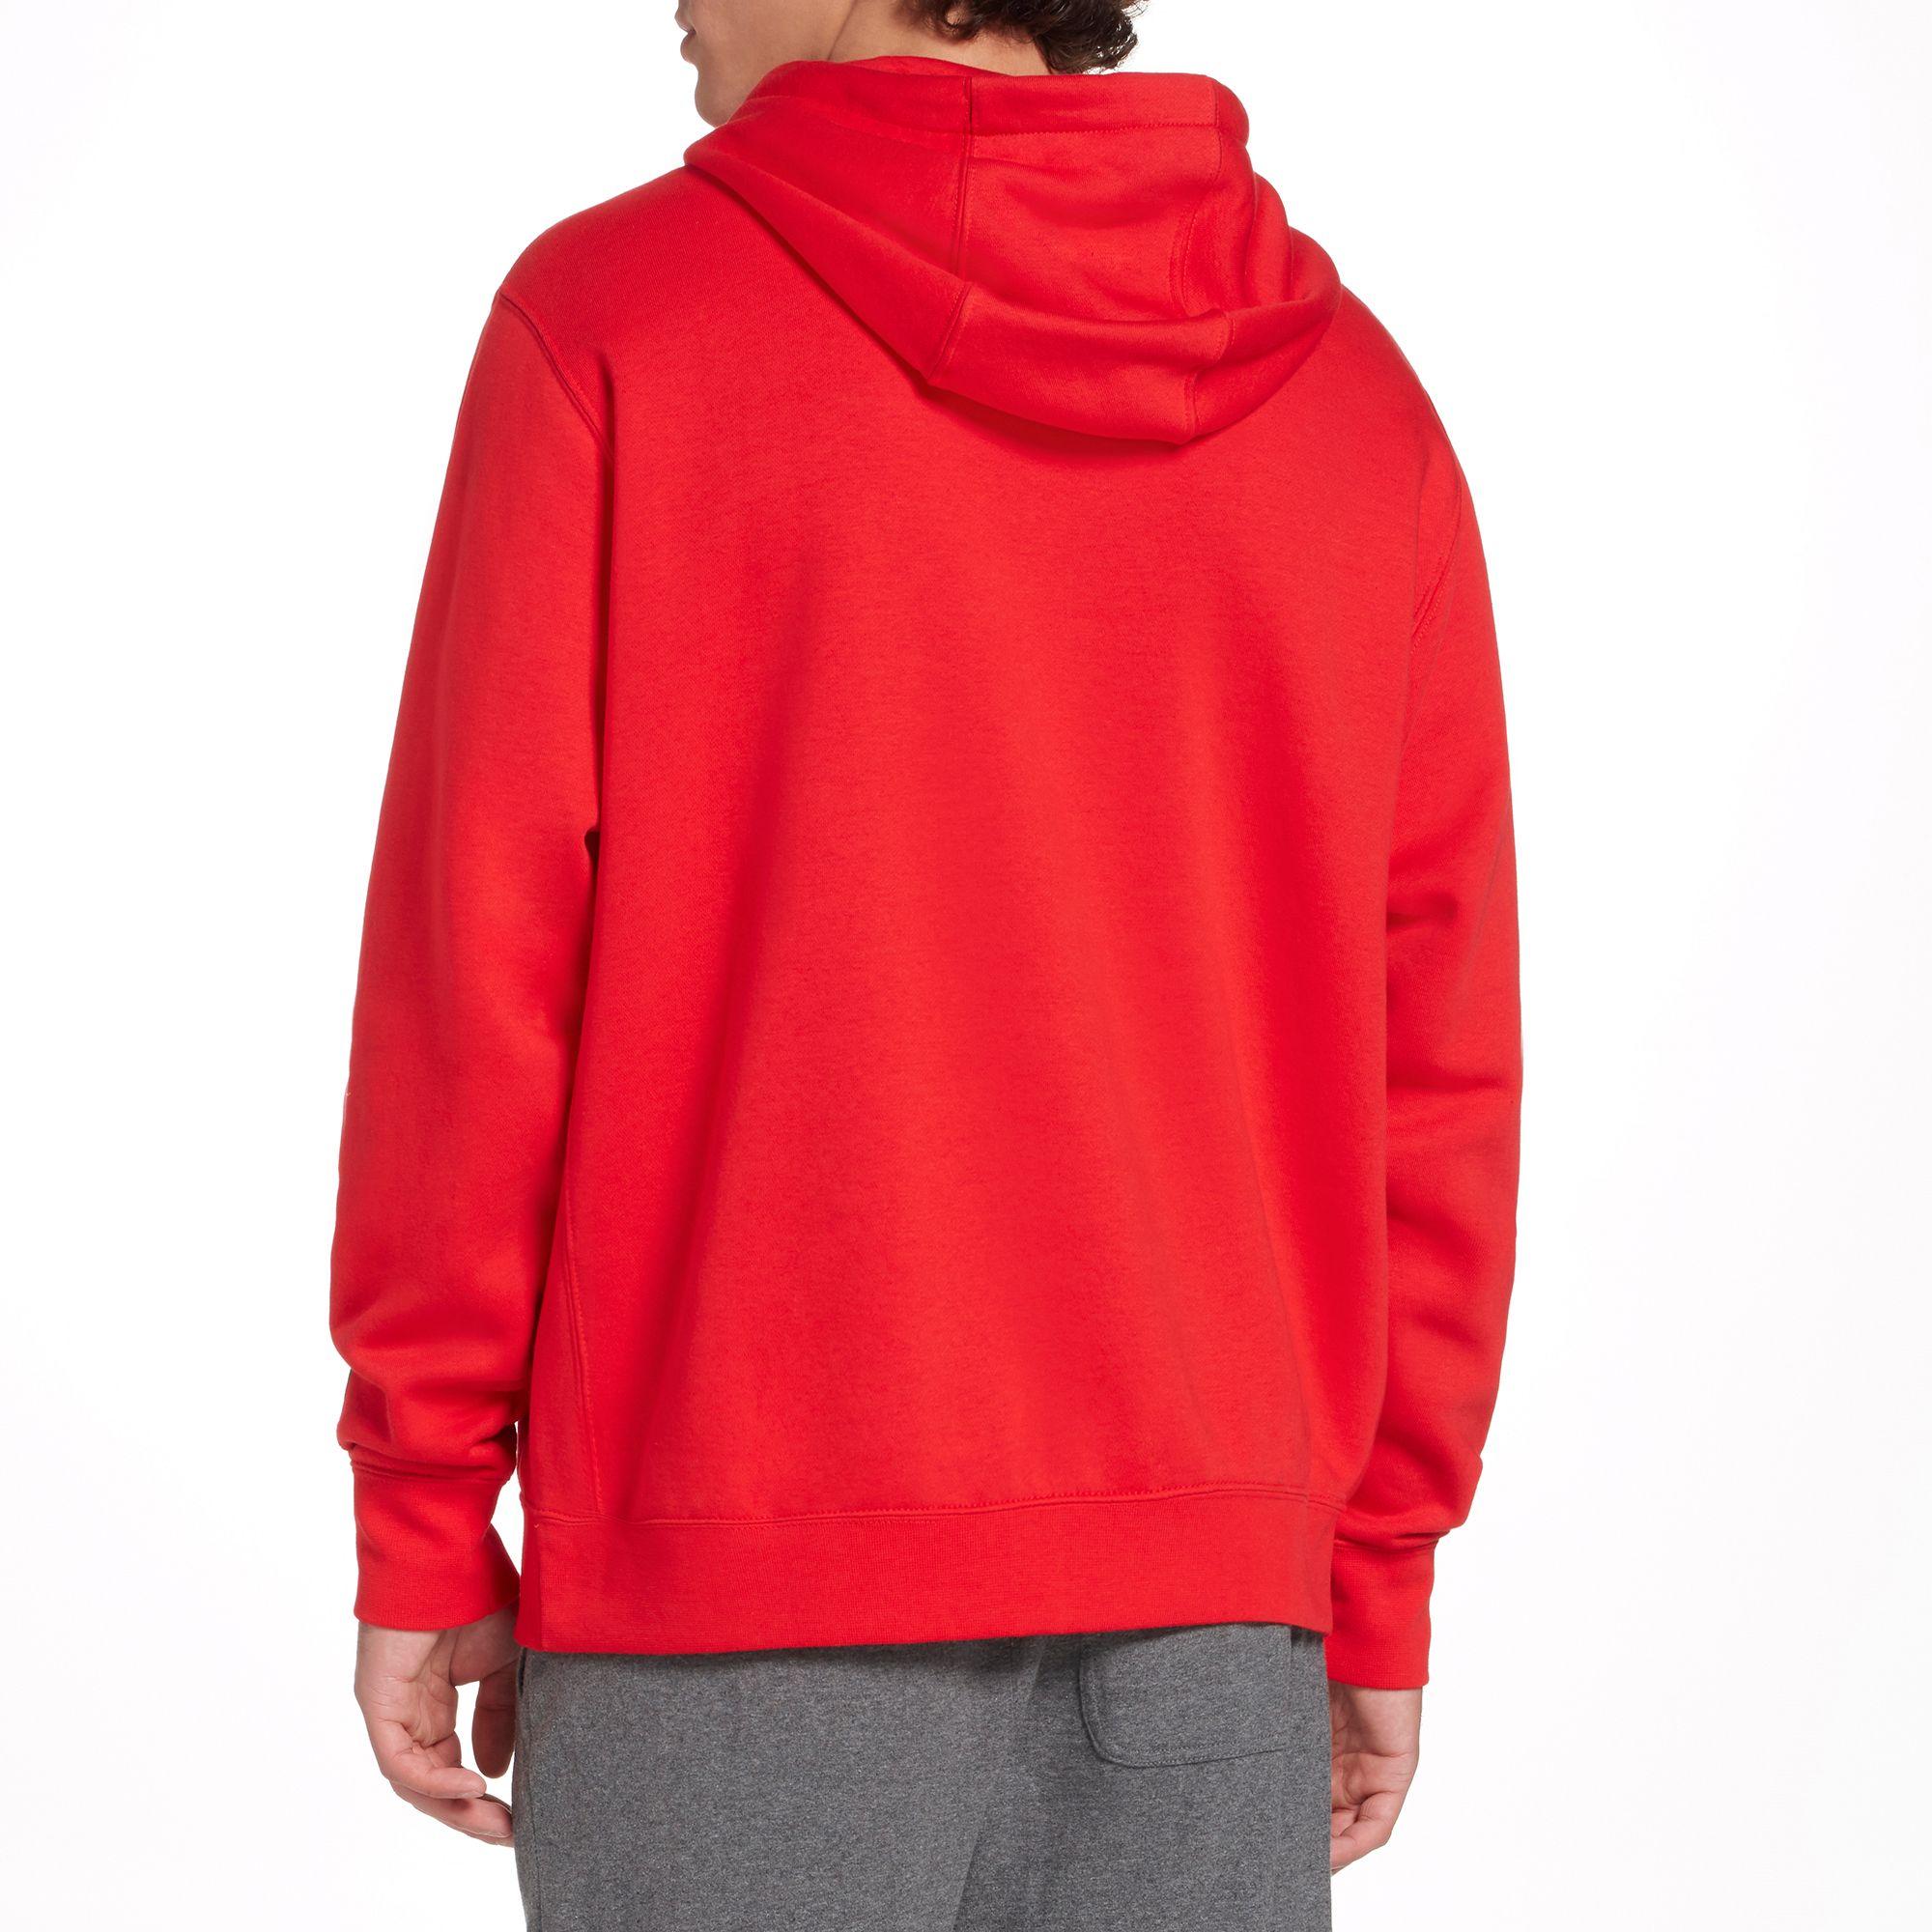 Nike Sportswear Just Do It Fleece Pullover Hoodie in University Red ...